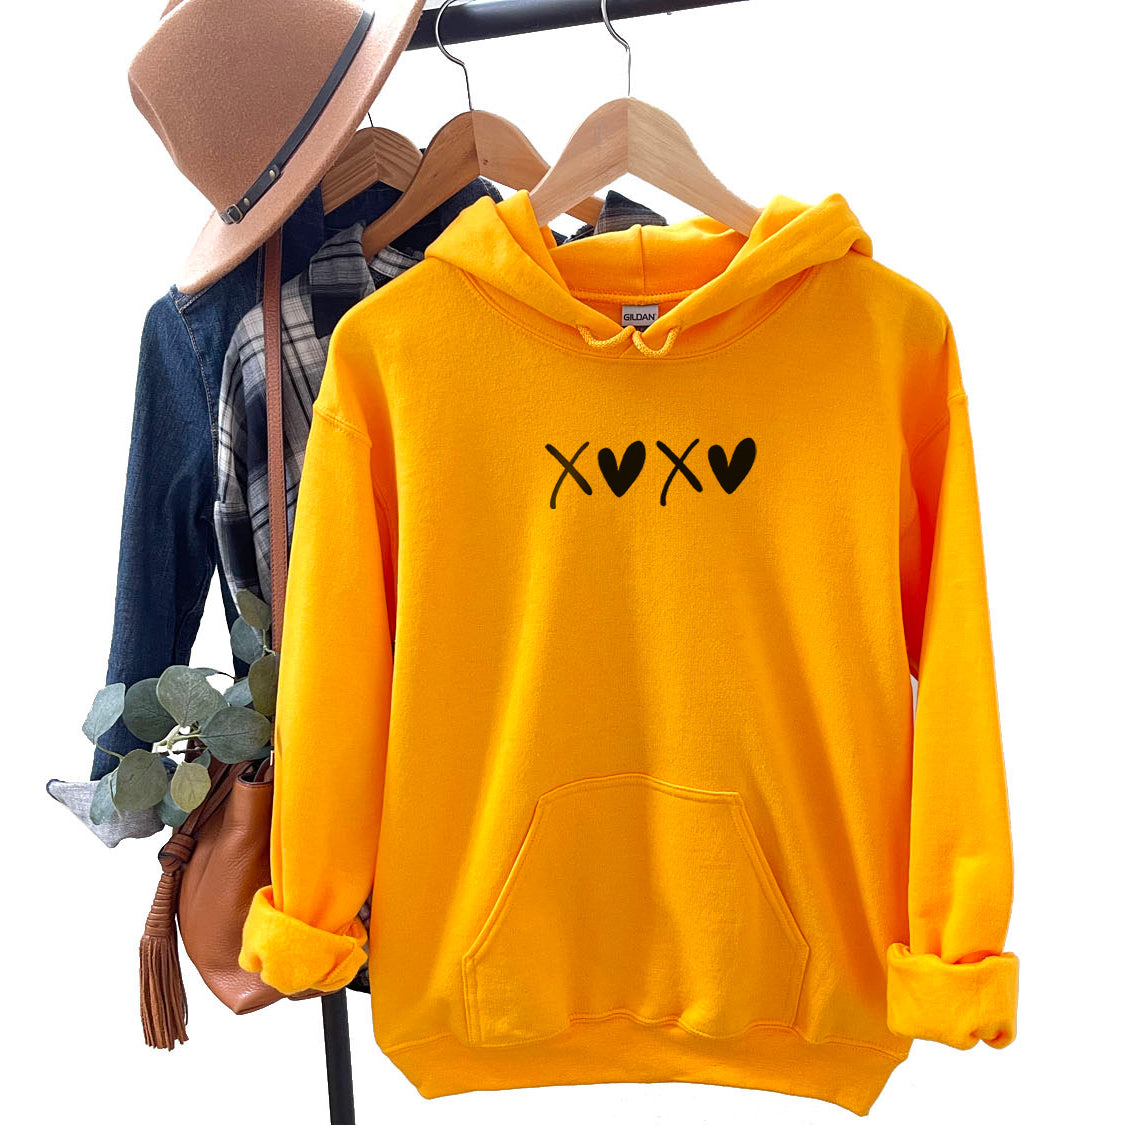 XOXO Hoodie - Love  Minimal Design Printed Hoodie